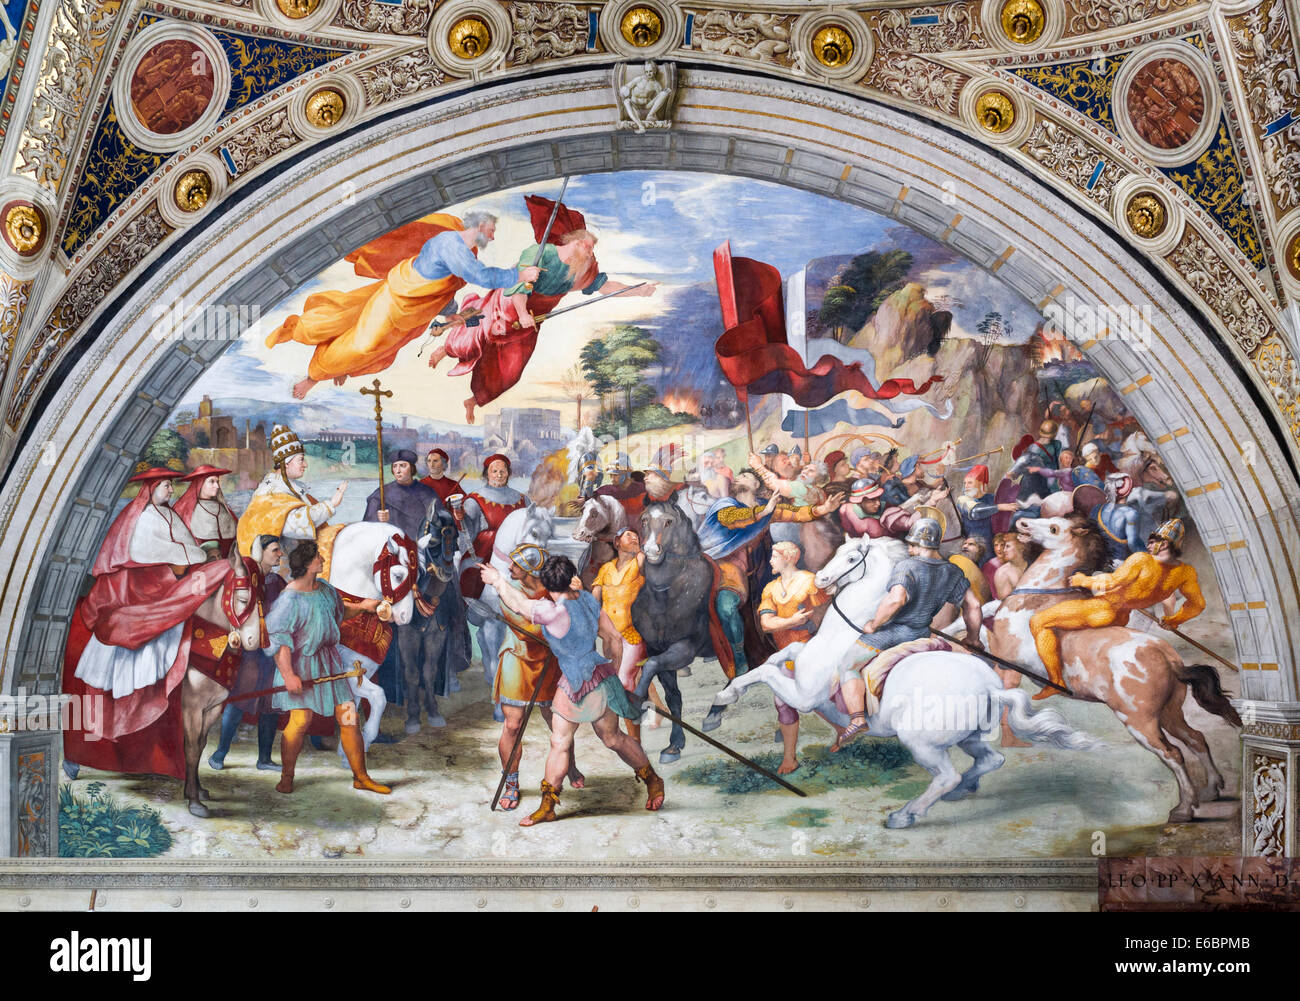 La réunion de Léon le Grand et Attila, Stanza di Eliodorus, les Chambres de Raphaël ou Stanze di Raffaello, fresque de Raphaël Banque D'Images